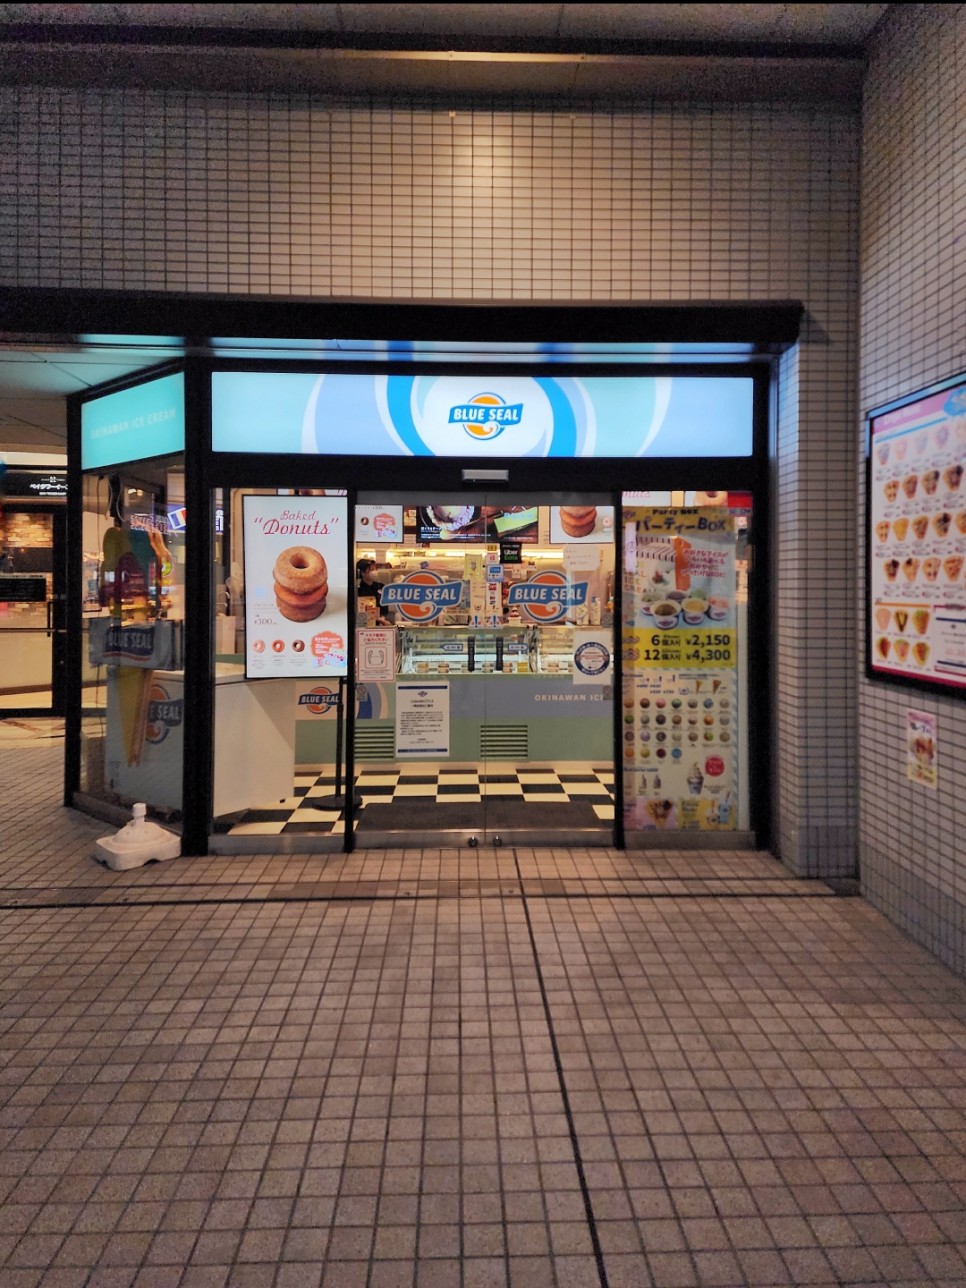 오사카 온천 추천 테마파크 시내 소라니와 온천 가격 예약 이용방법